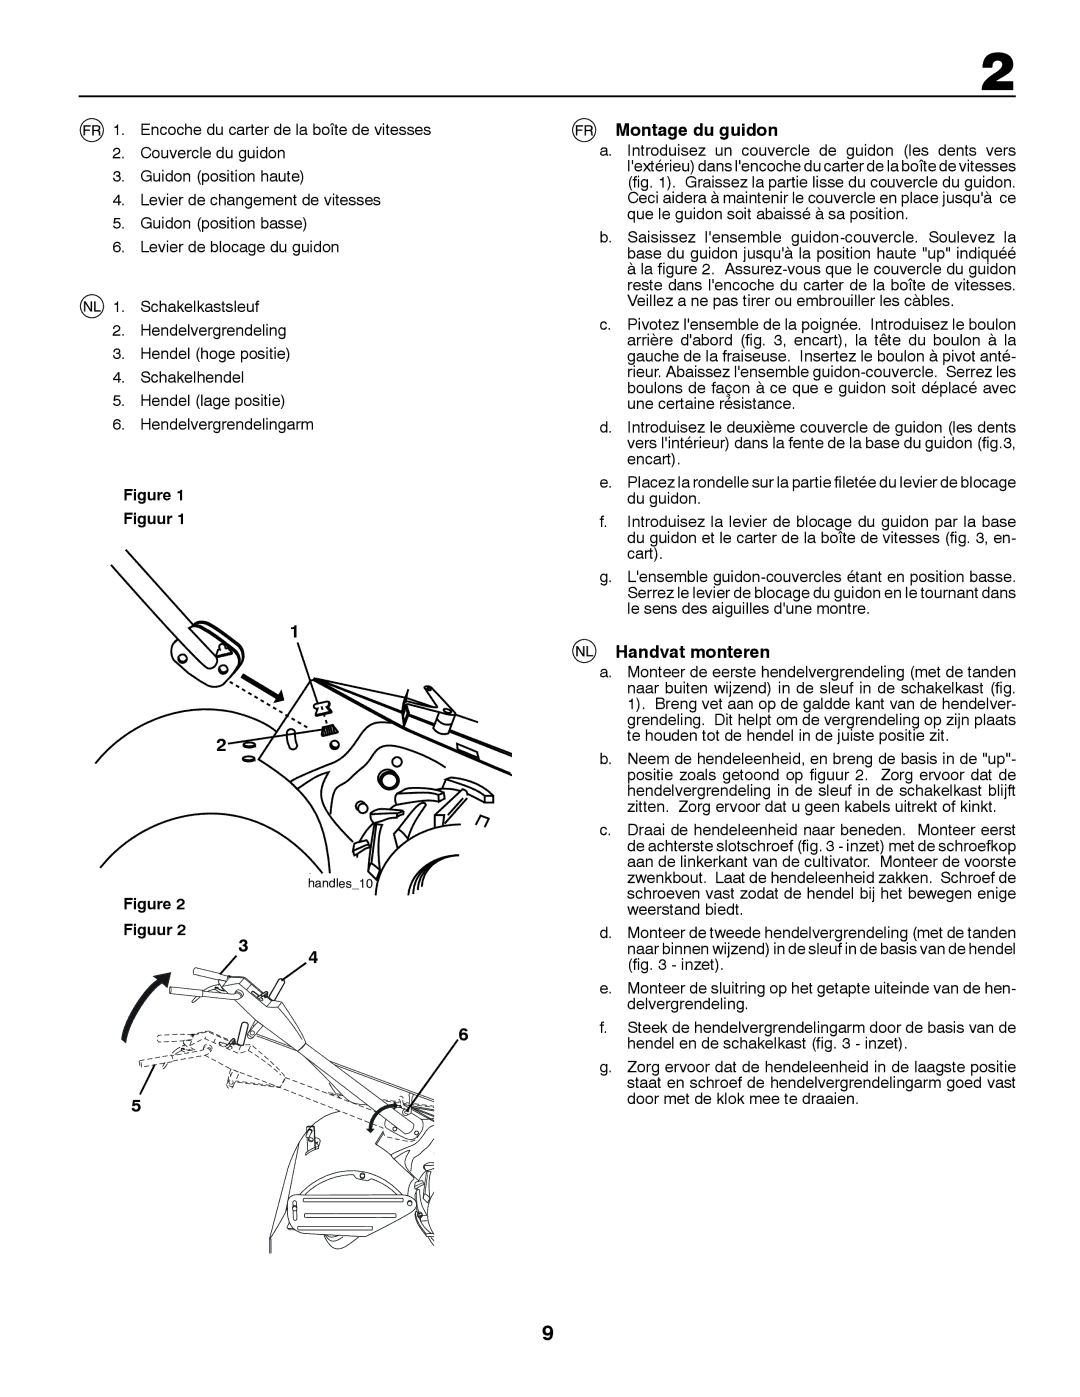 McCulloch MRT6 instruction manual Montage du guidon, Handvat monteren, Figuur 